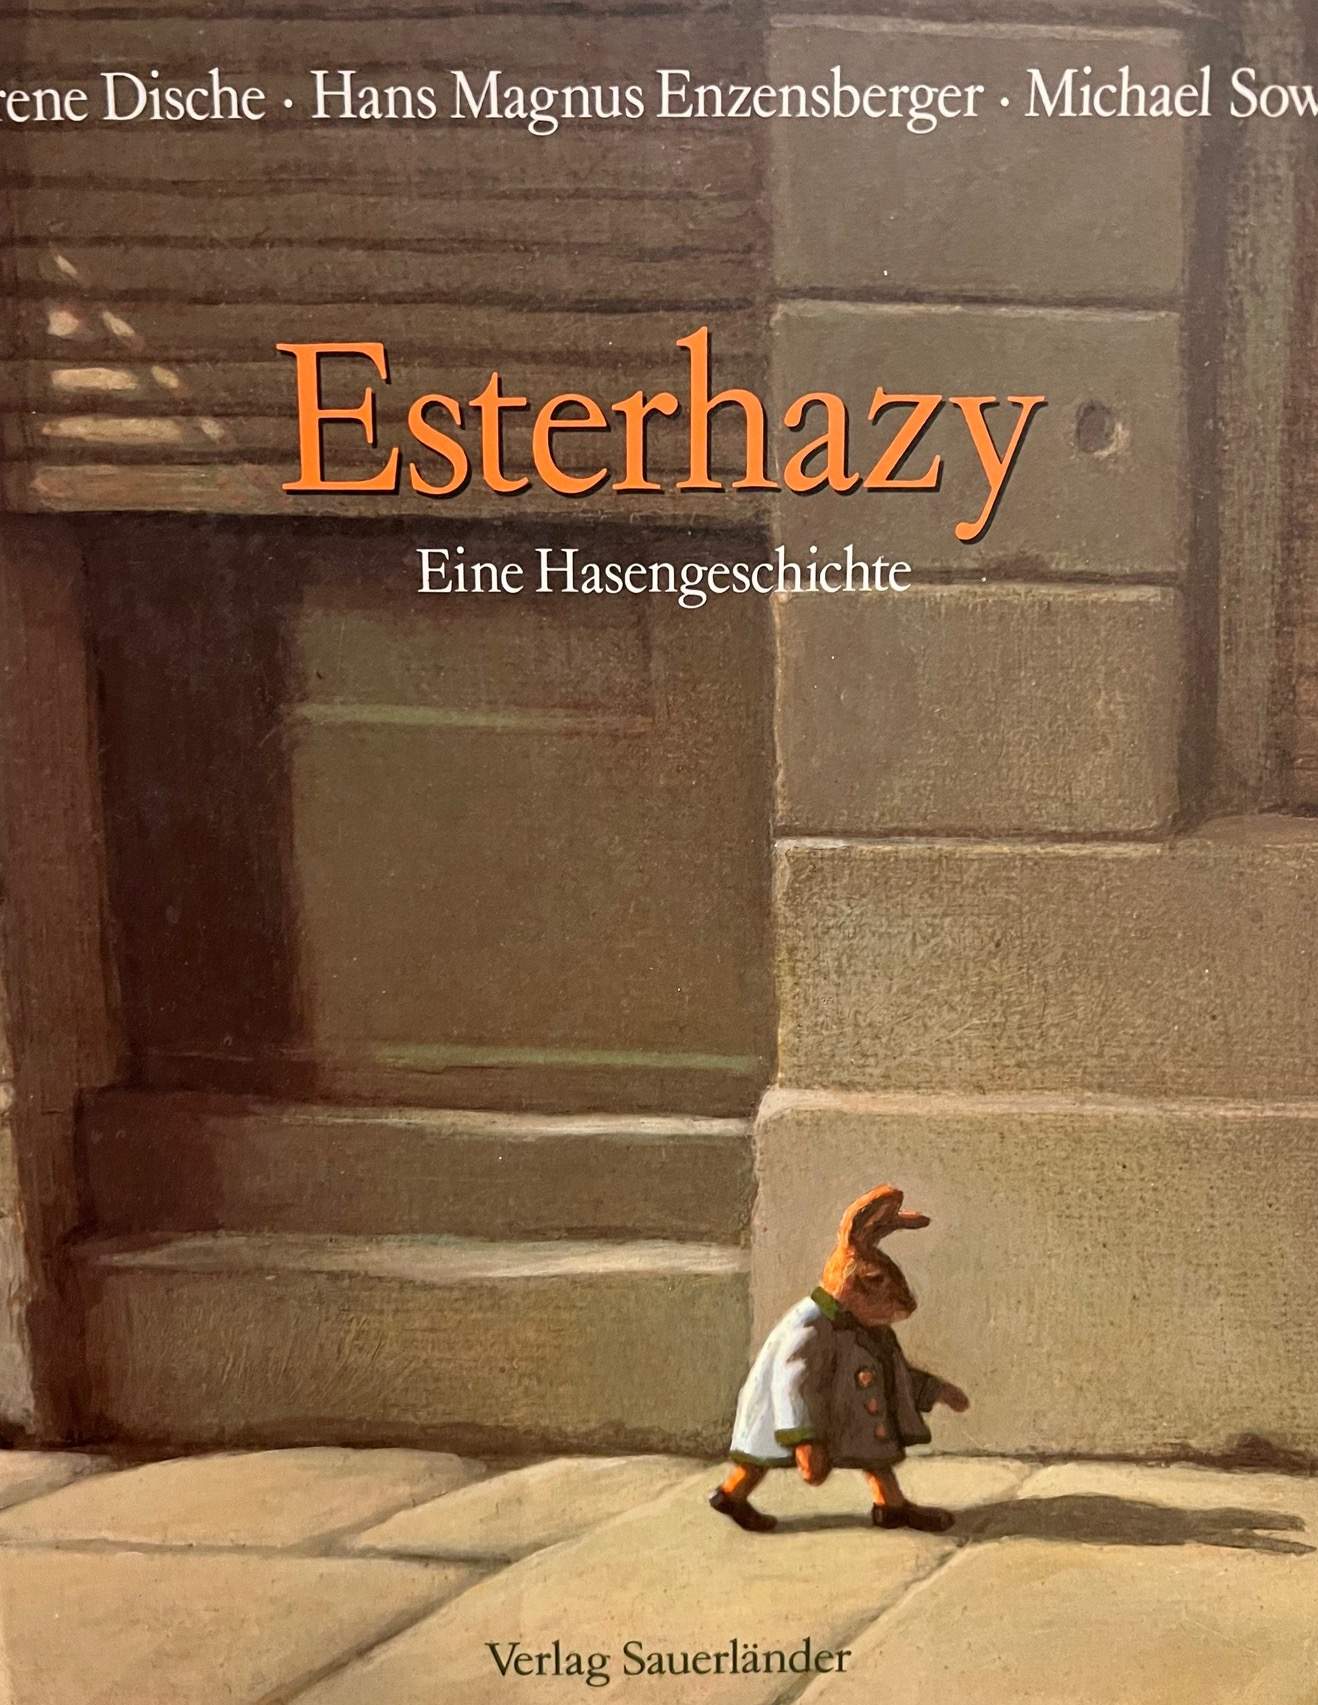 Esterhazy - Eine Hasengeschichte